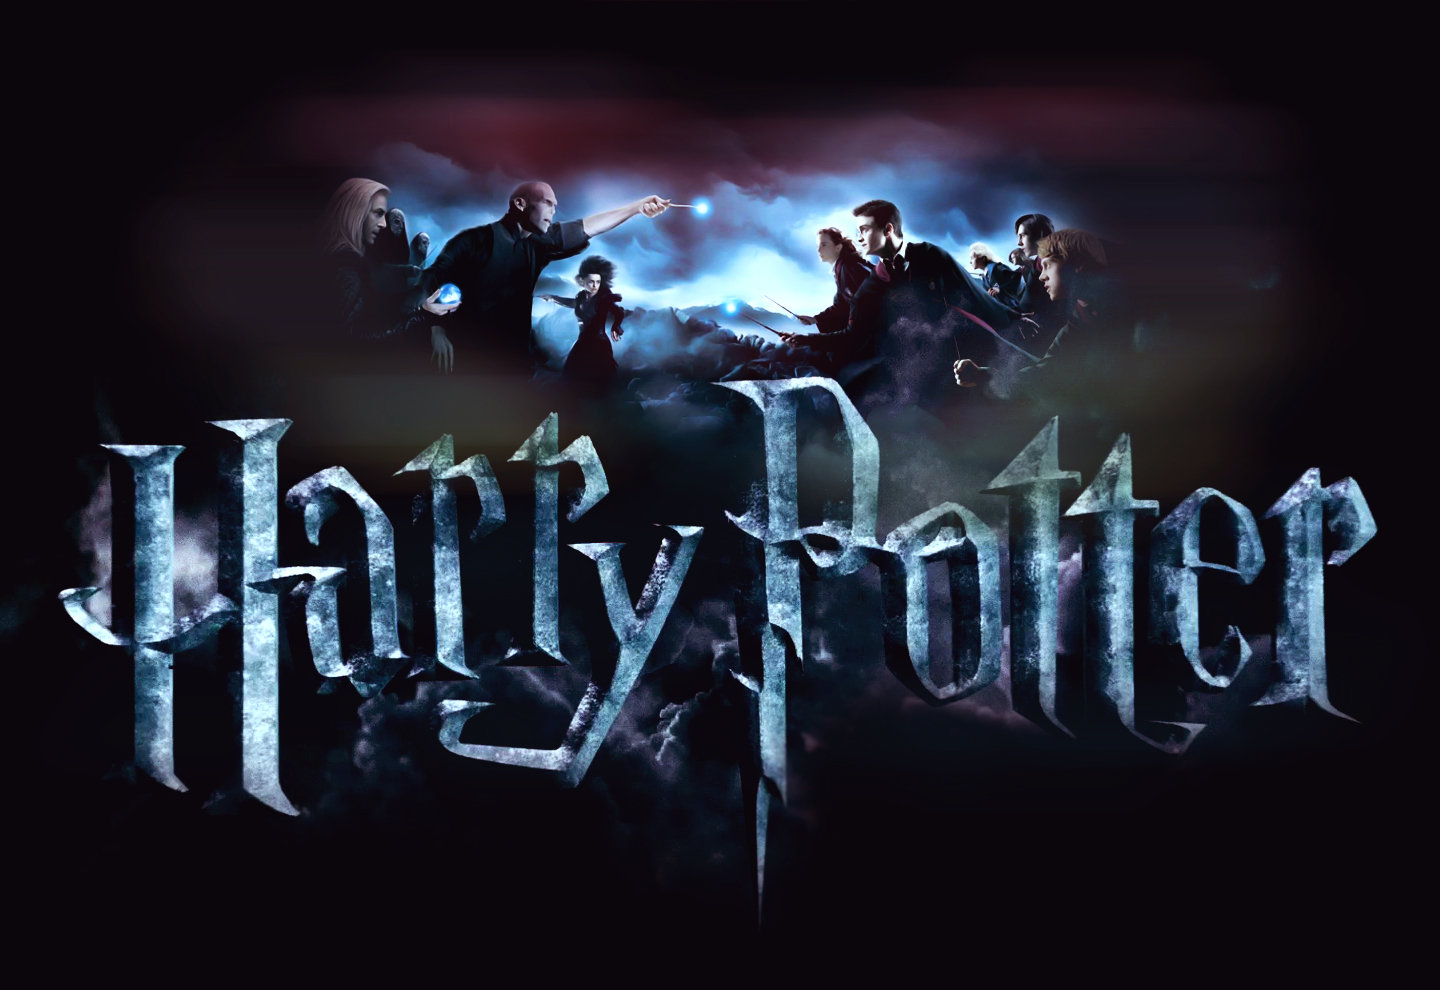 5 μαγικά “γκατζετάκια” των Χάρι Πότερ που σήμερα… υπάρχουν!